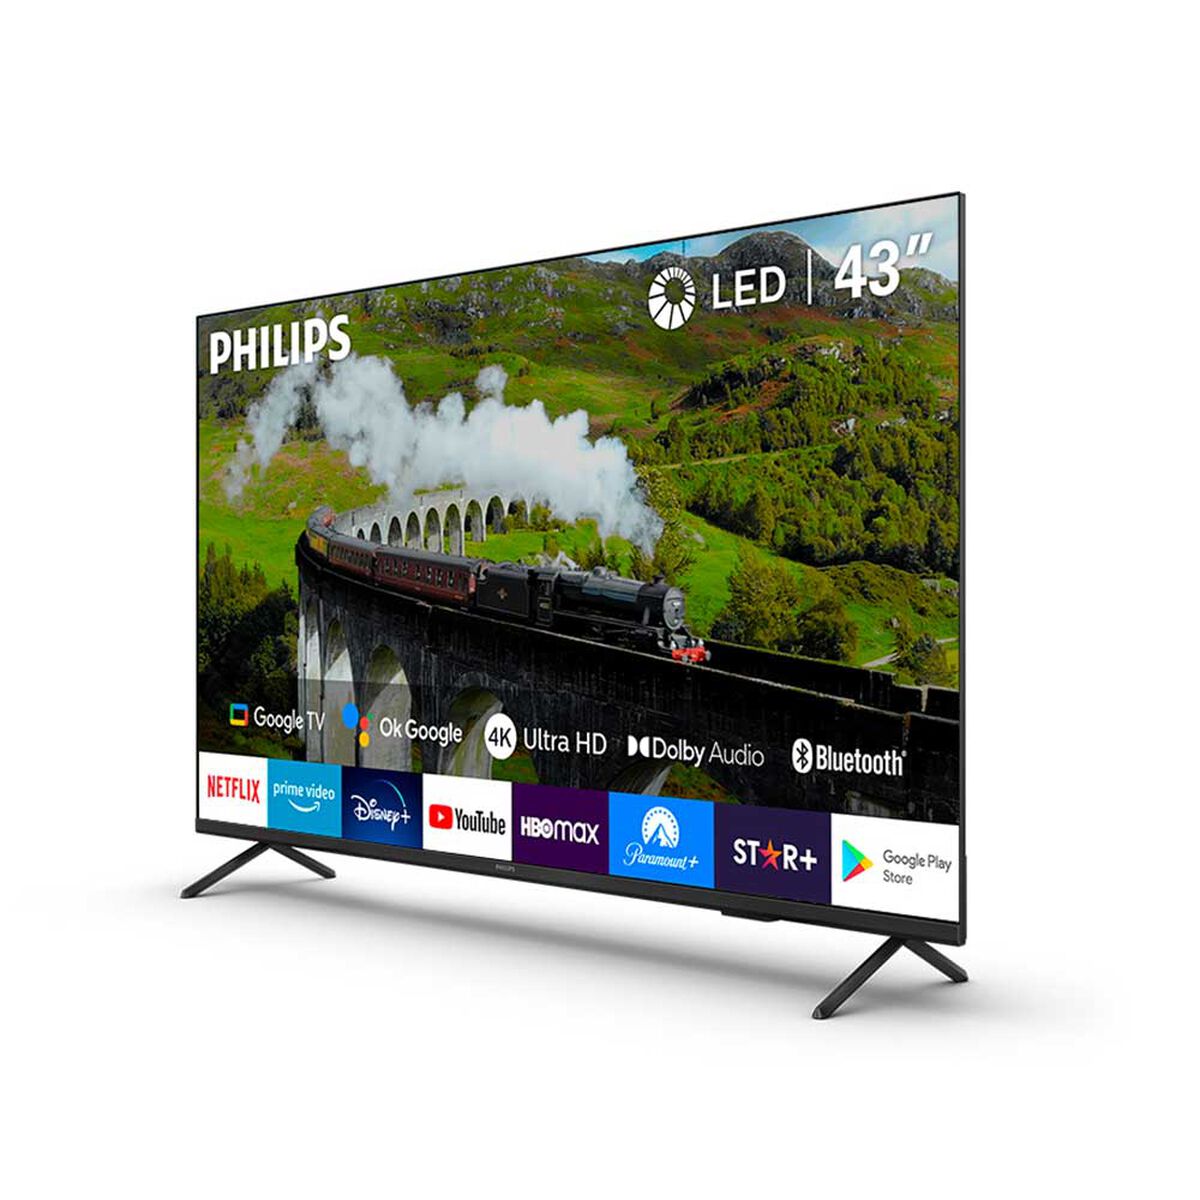 LED 43" Philips 43PUD7408 Smart TV 4K UHD